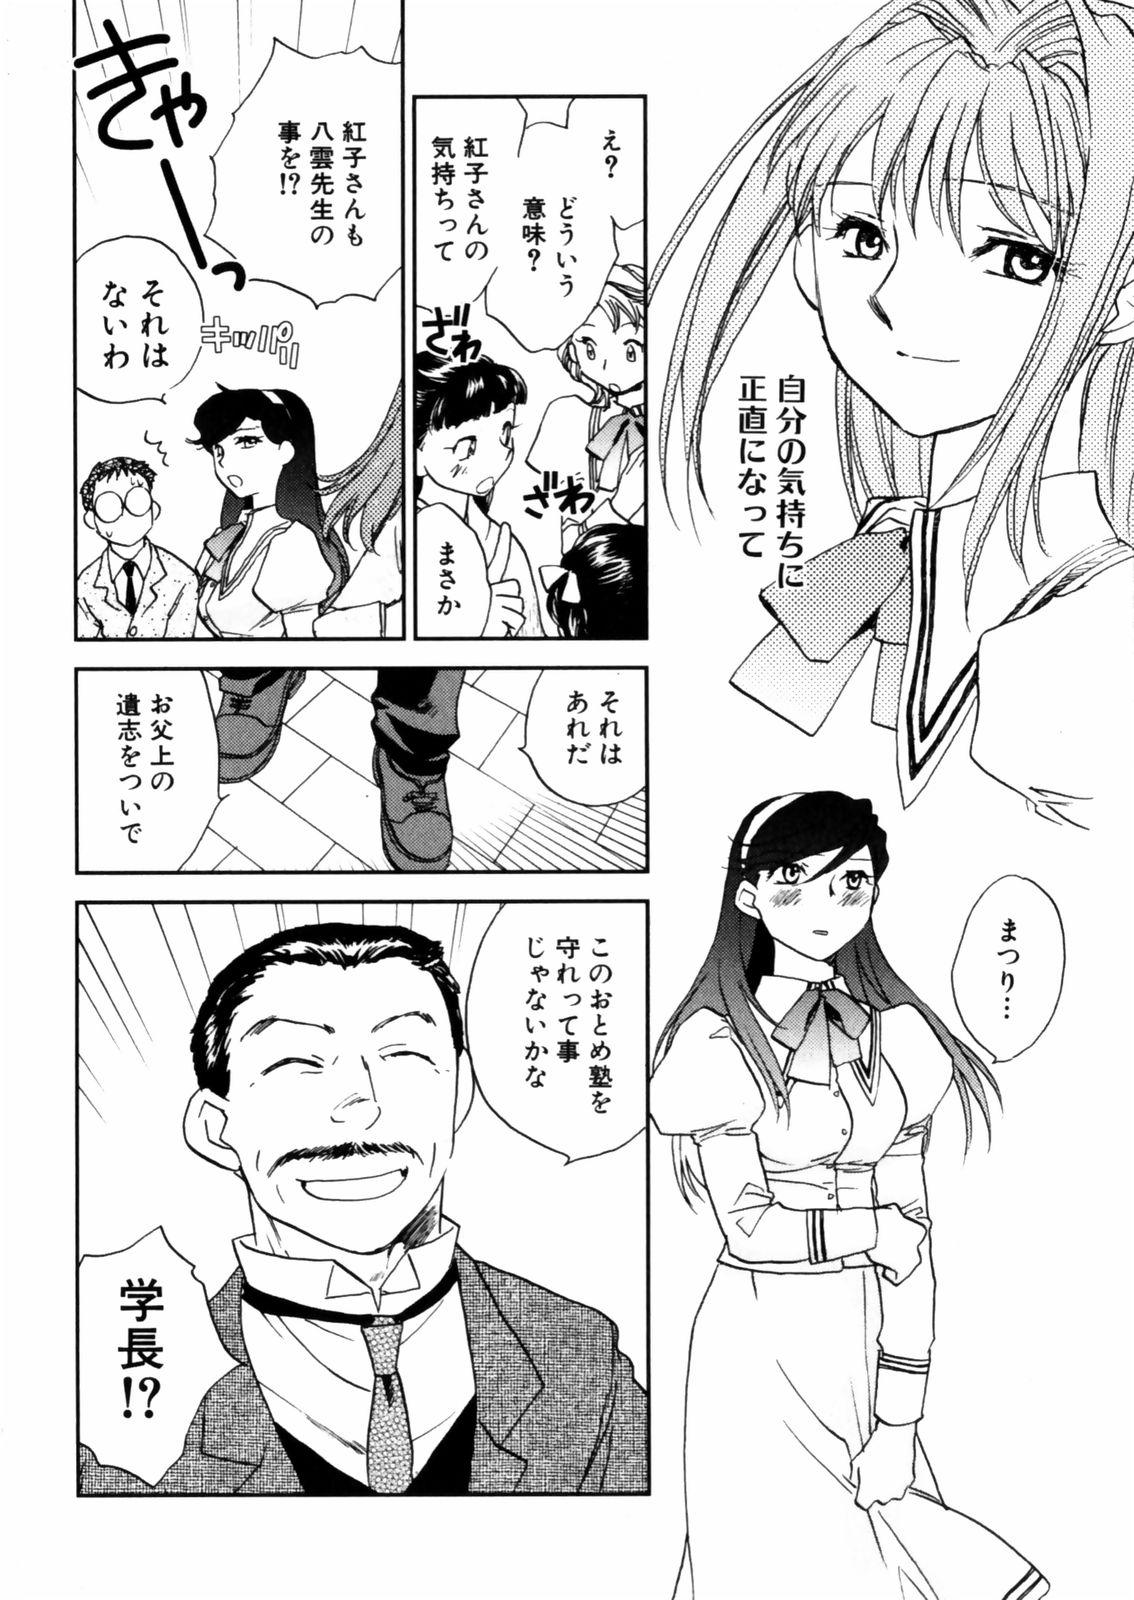 [Okano Ahiru] Hanasake ! Otome Juku (Otome Private Tutoring School) Vol.2 129